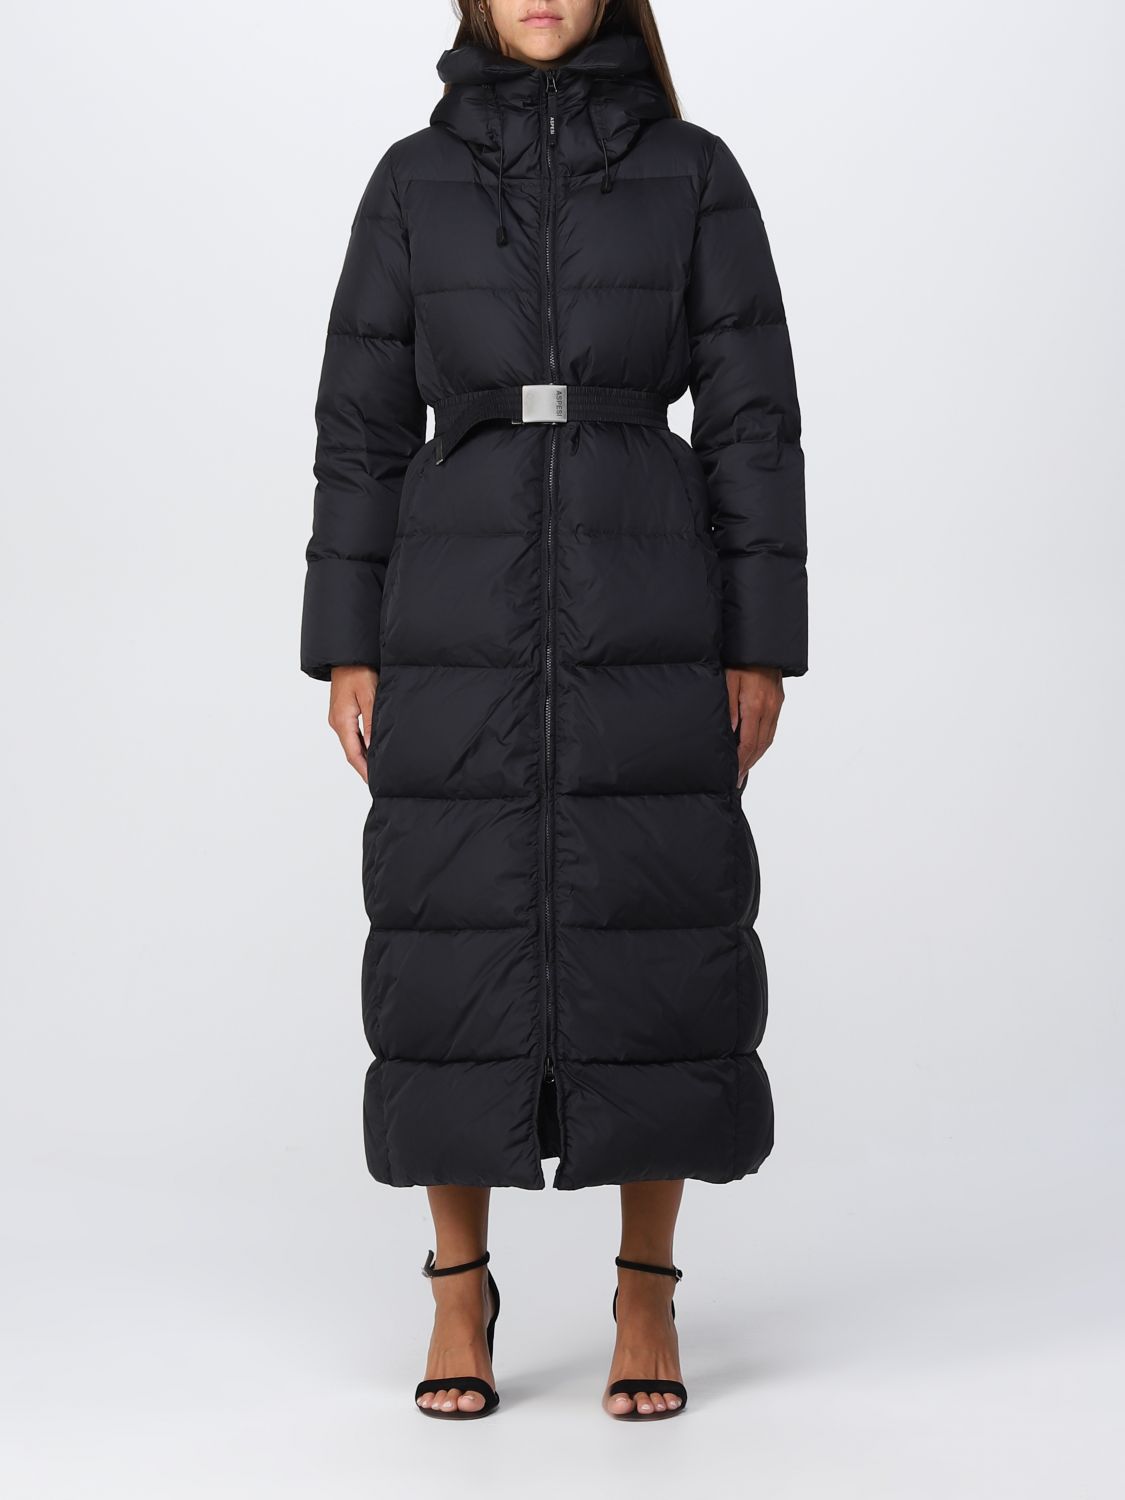 ASPESI: jacket for women - Black | Aspesi jacket 2N45V006 online on ...